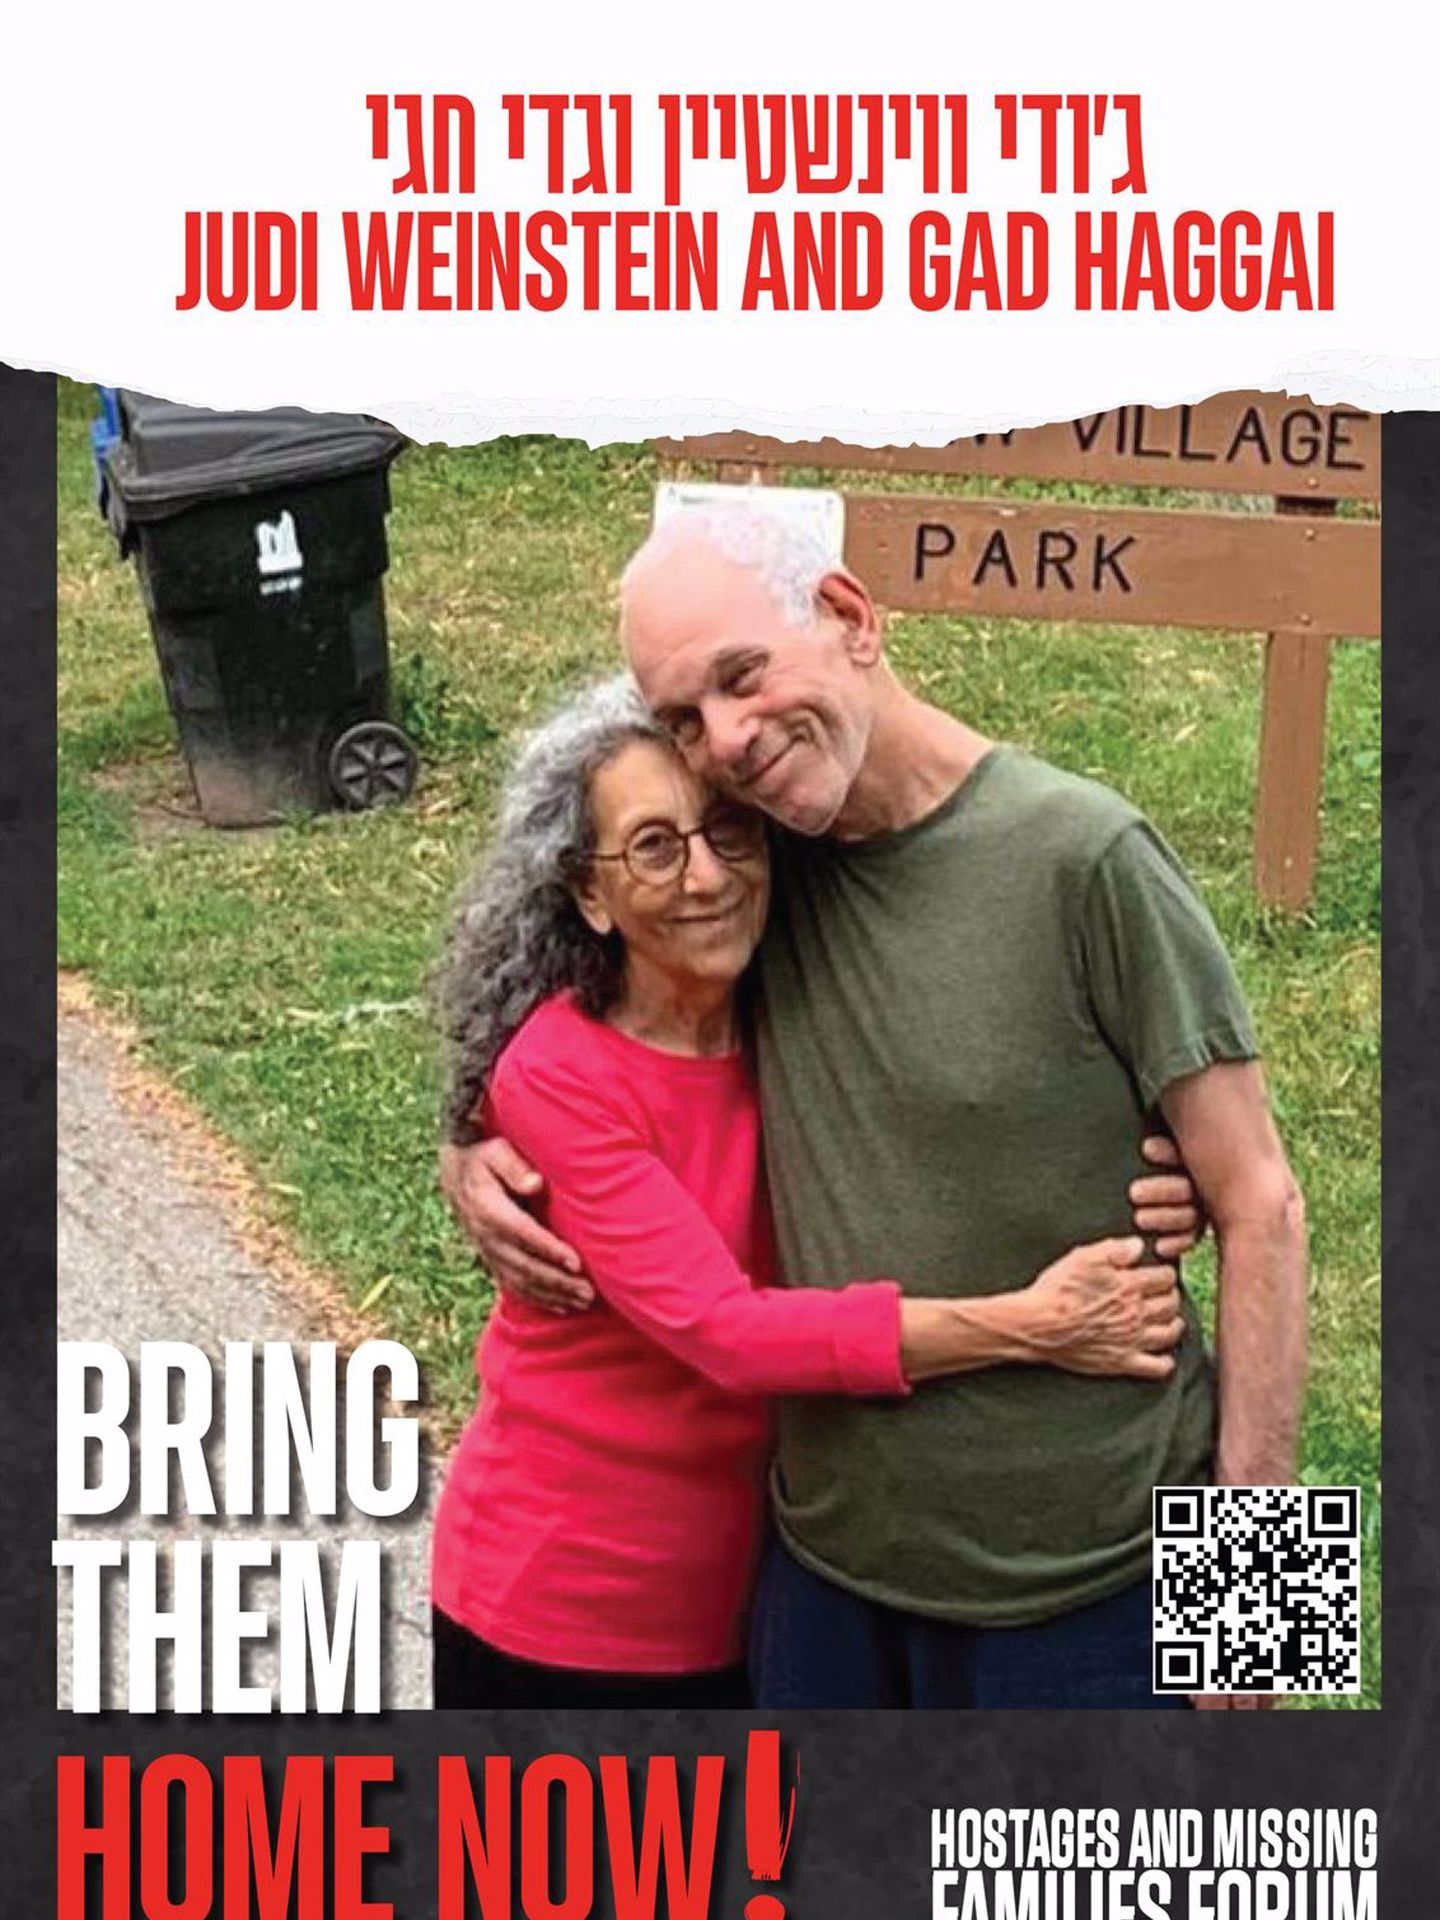 Los rehenes Judith Weinstein y Gadi Haggai. (Europa Press/Contacto/Bring Them Home Now)